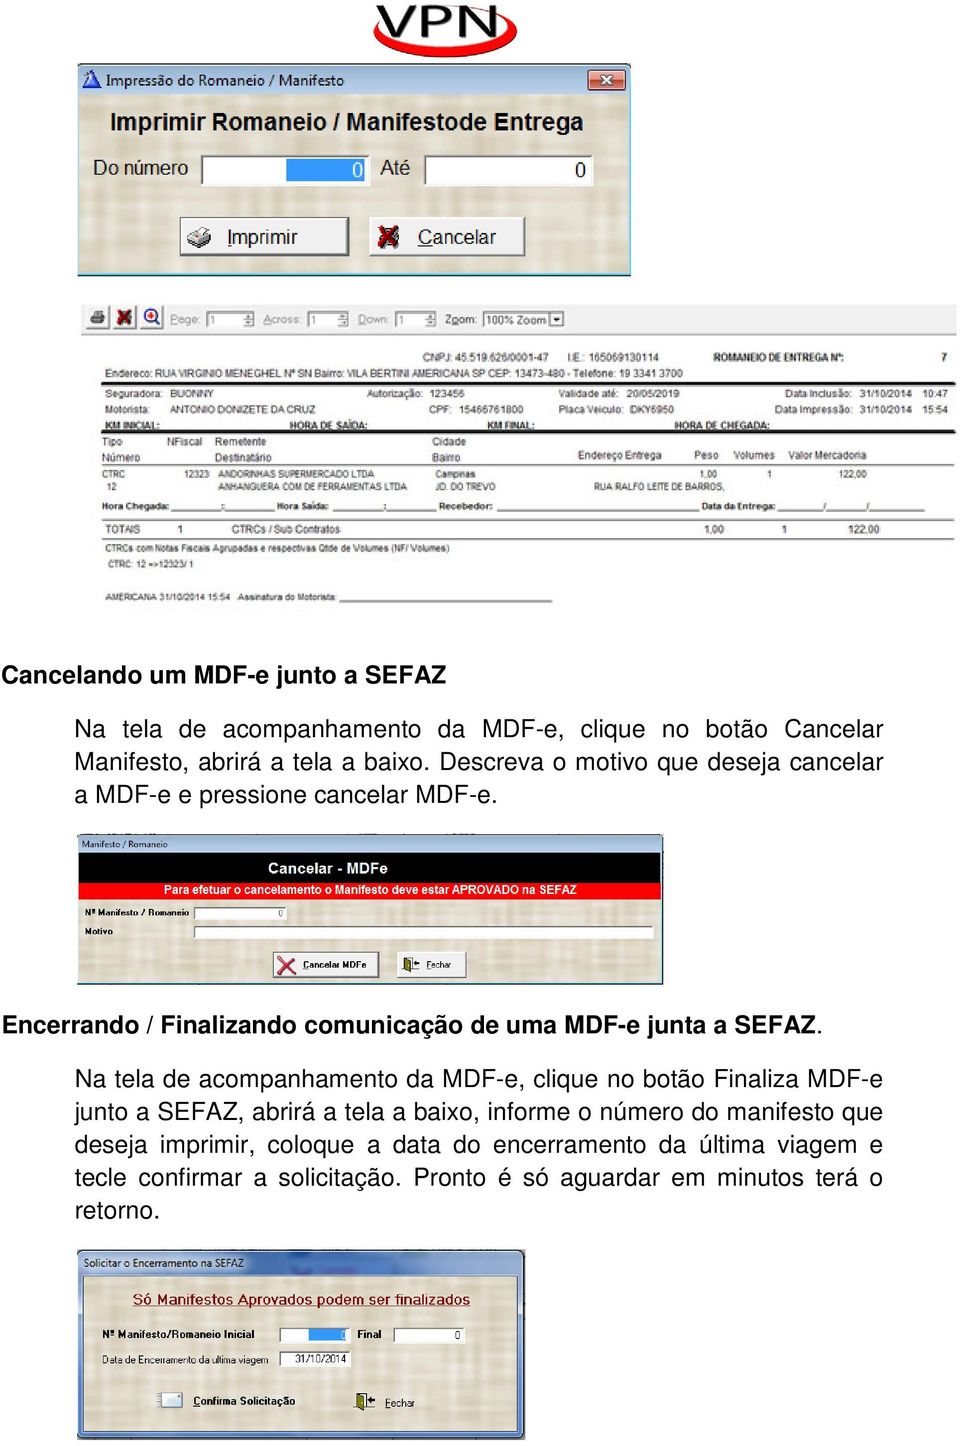 Na tela de acompanhamento da MDF-e, clique no botão Finaliza MDF-e junto a SEFAZ, abrirá a tela a baixo, informe o número do manifesto